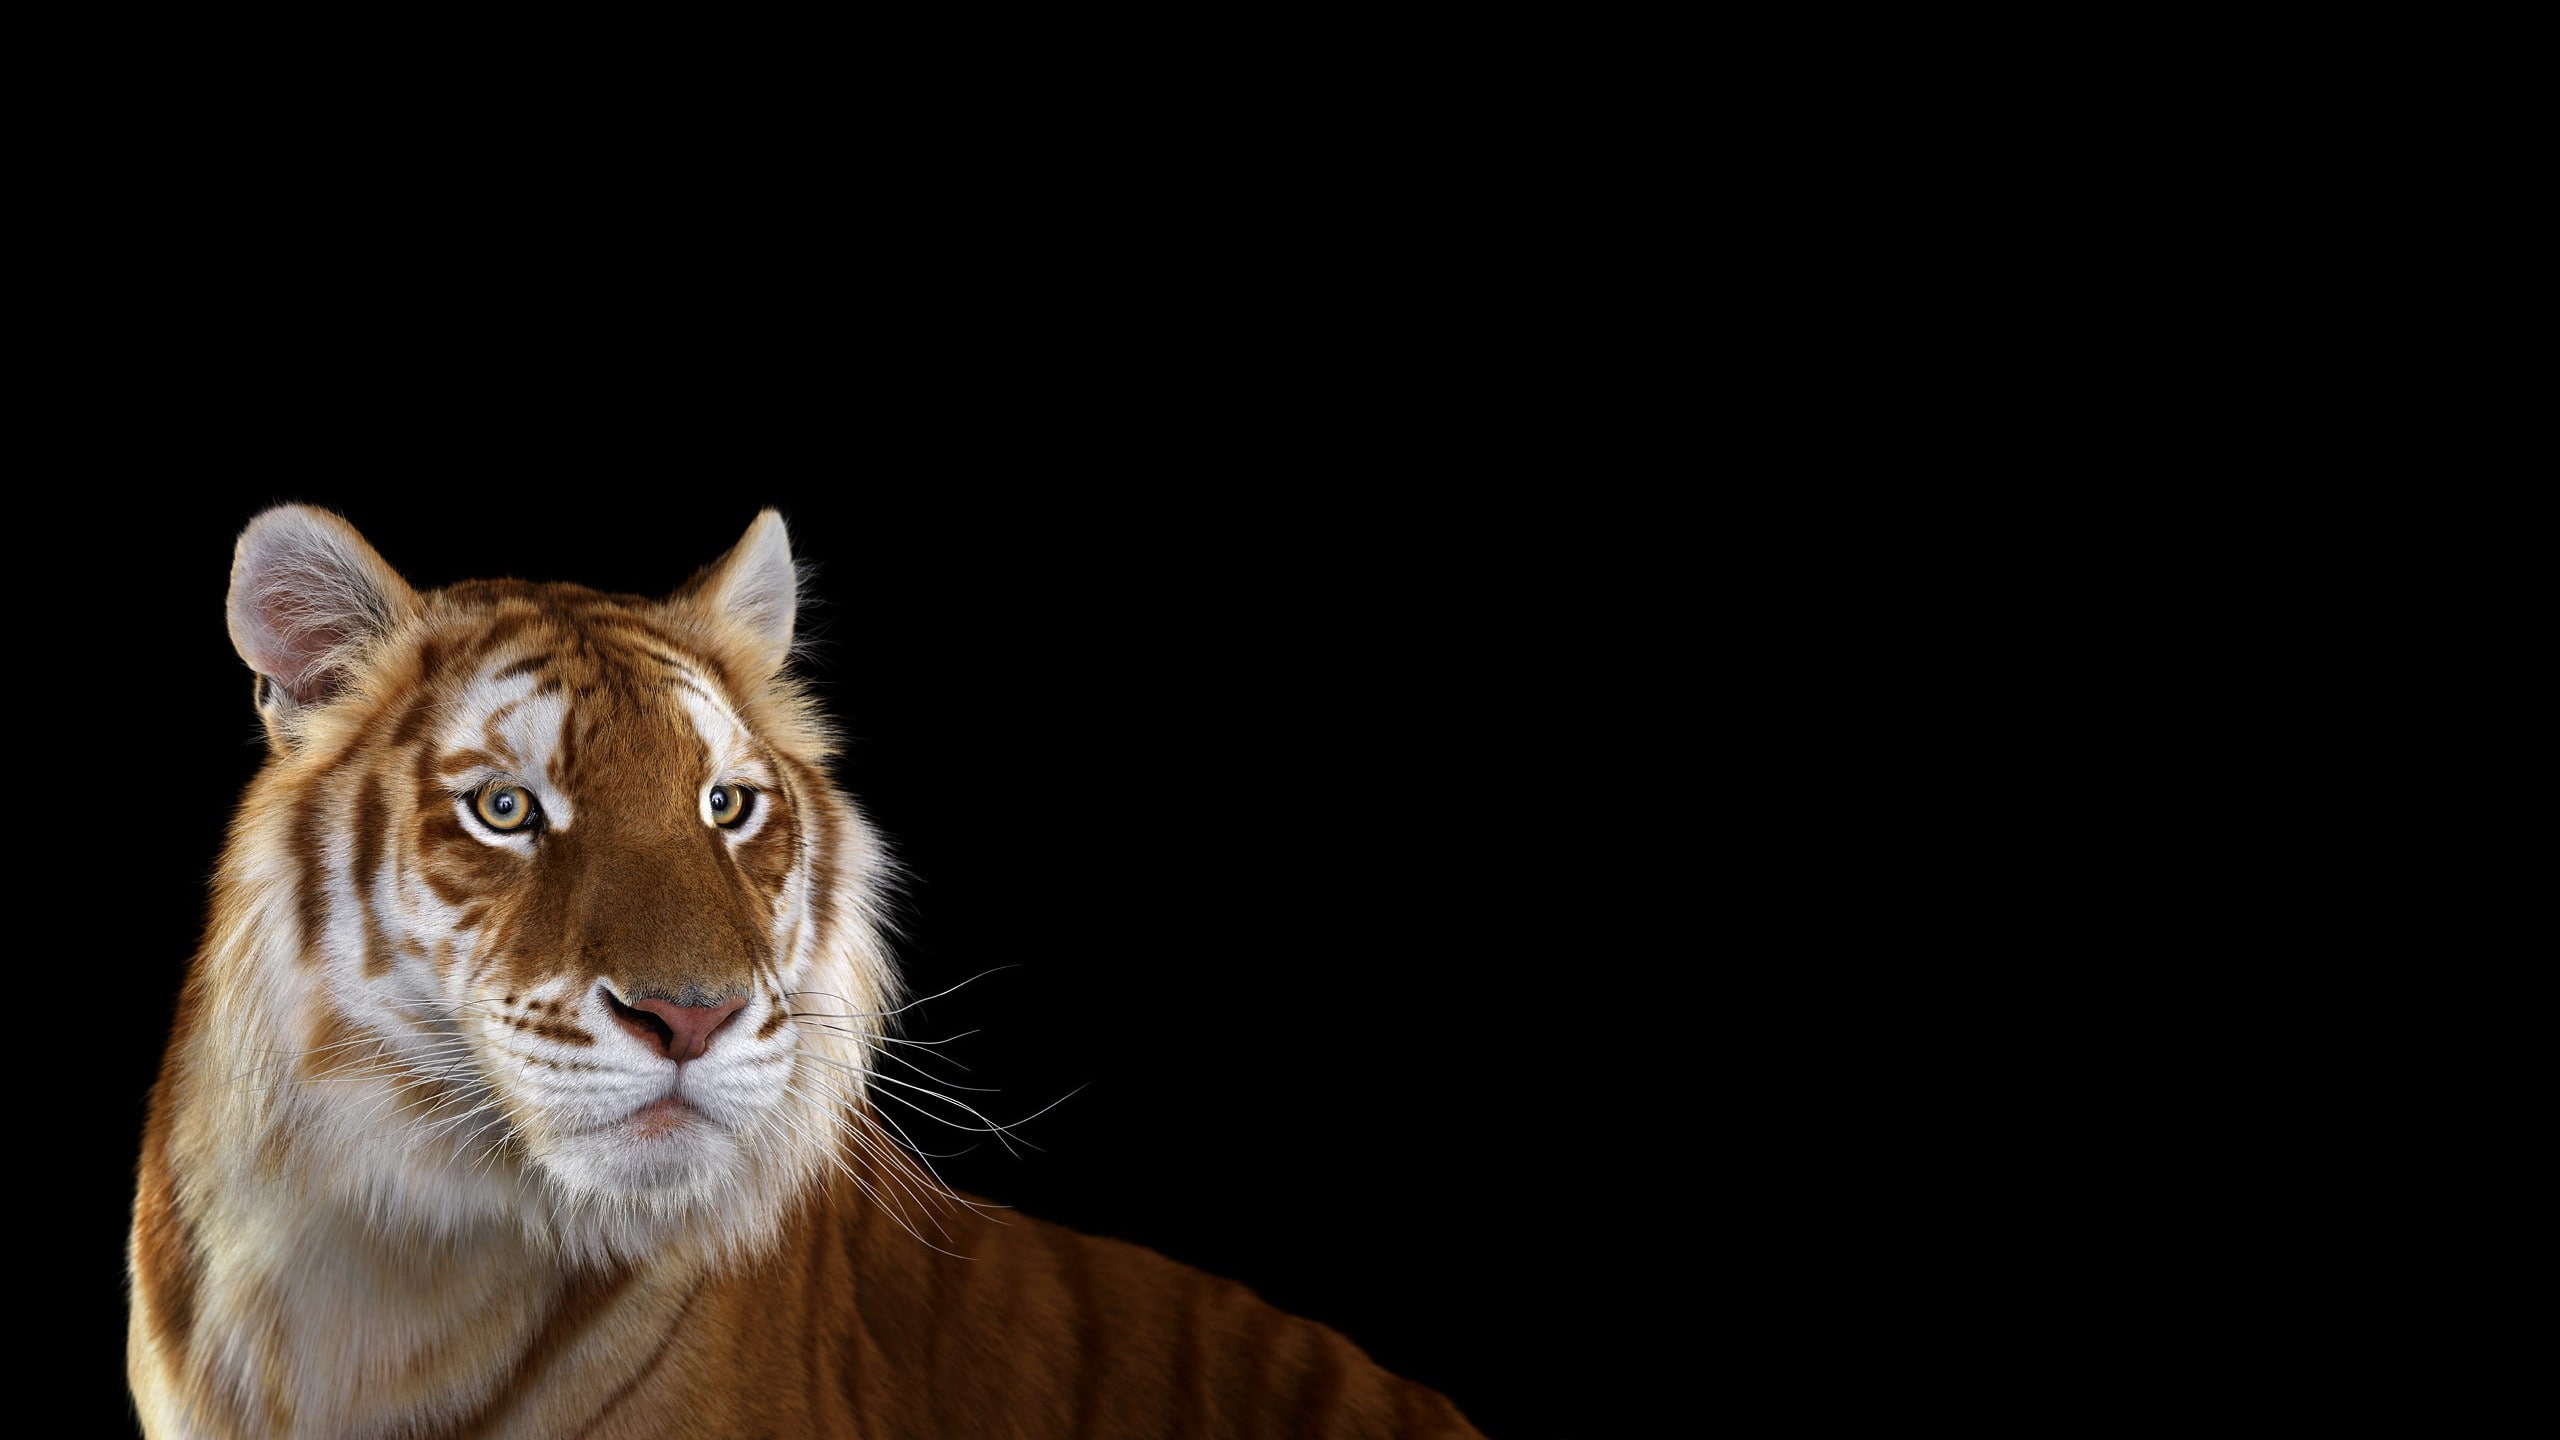 Photography, Mammals, Big Cat, Tiger, 2560x1440